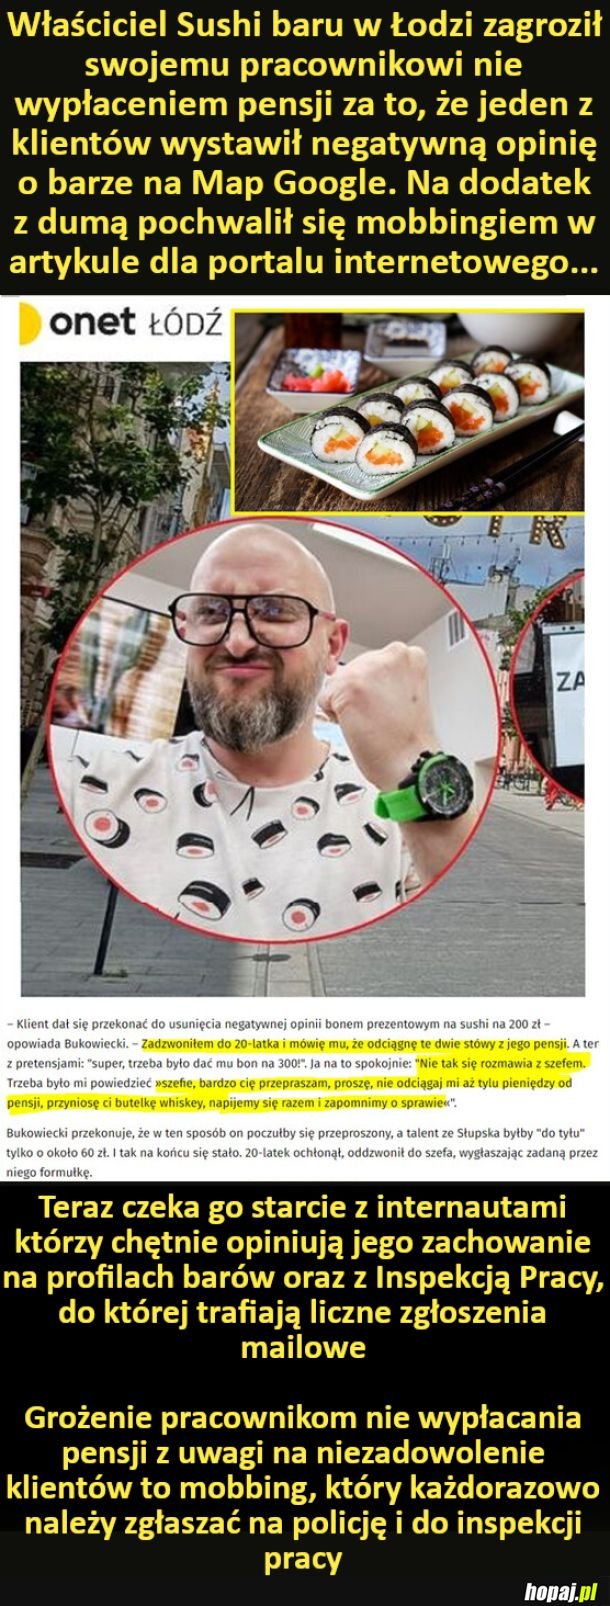 Właściciel Sushi baru w Łodzi zagroził swojemu pracownikowi nie wypłaceniem pensji za to, że jeden z klientów wystawił negatywną opinię o barze na Map Google